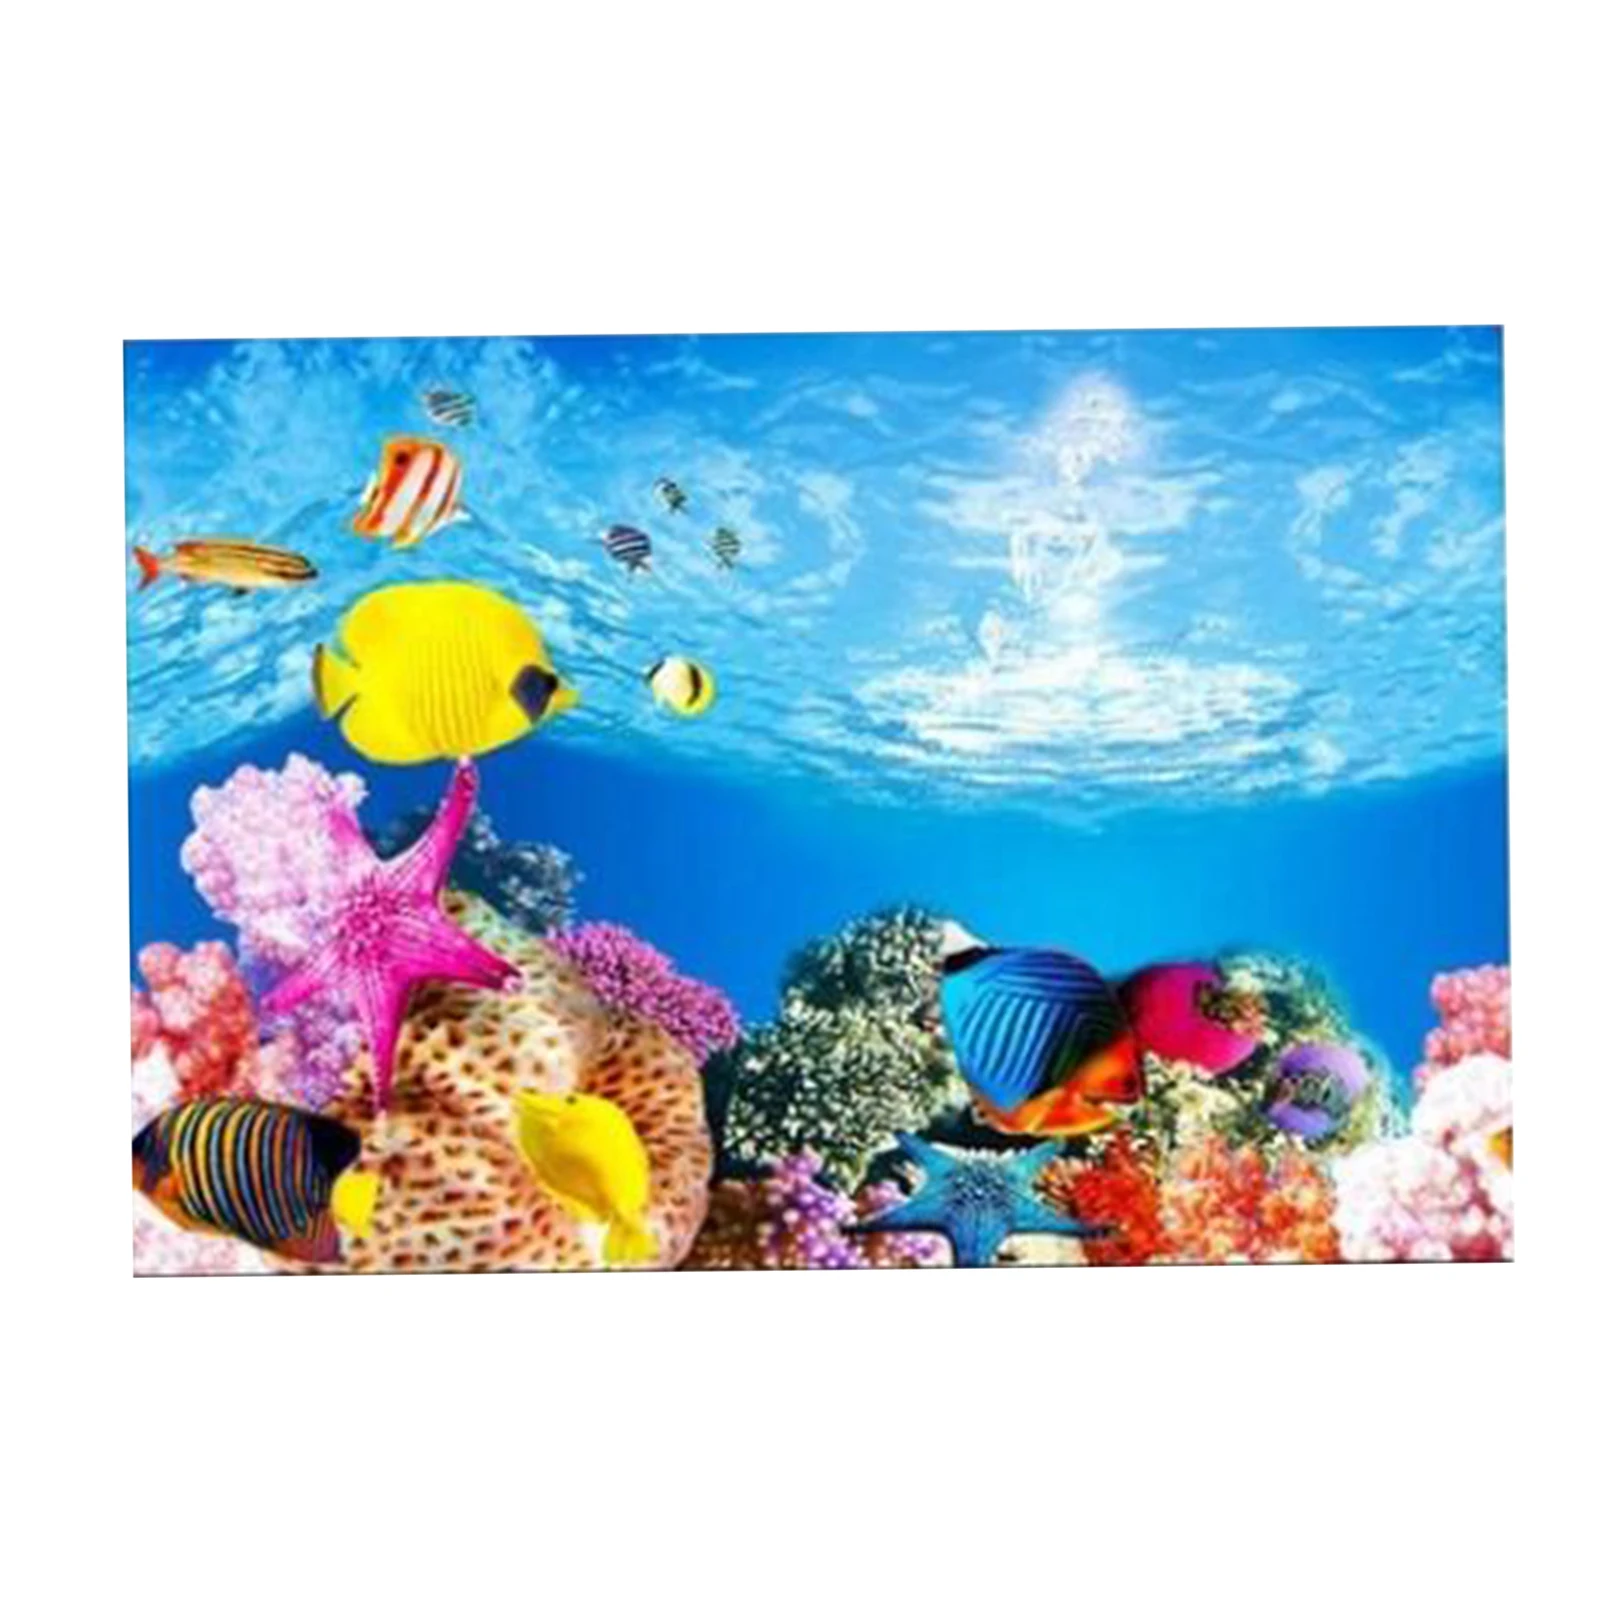 Oumij Aquarium Background Sticker,Beach Sunrise Poster,3D Effect Adhesive,for Aquarium Fish Tank Decoration 12246cm 